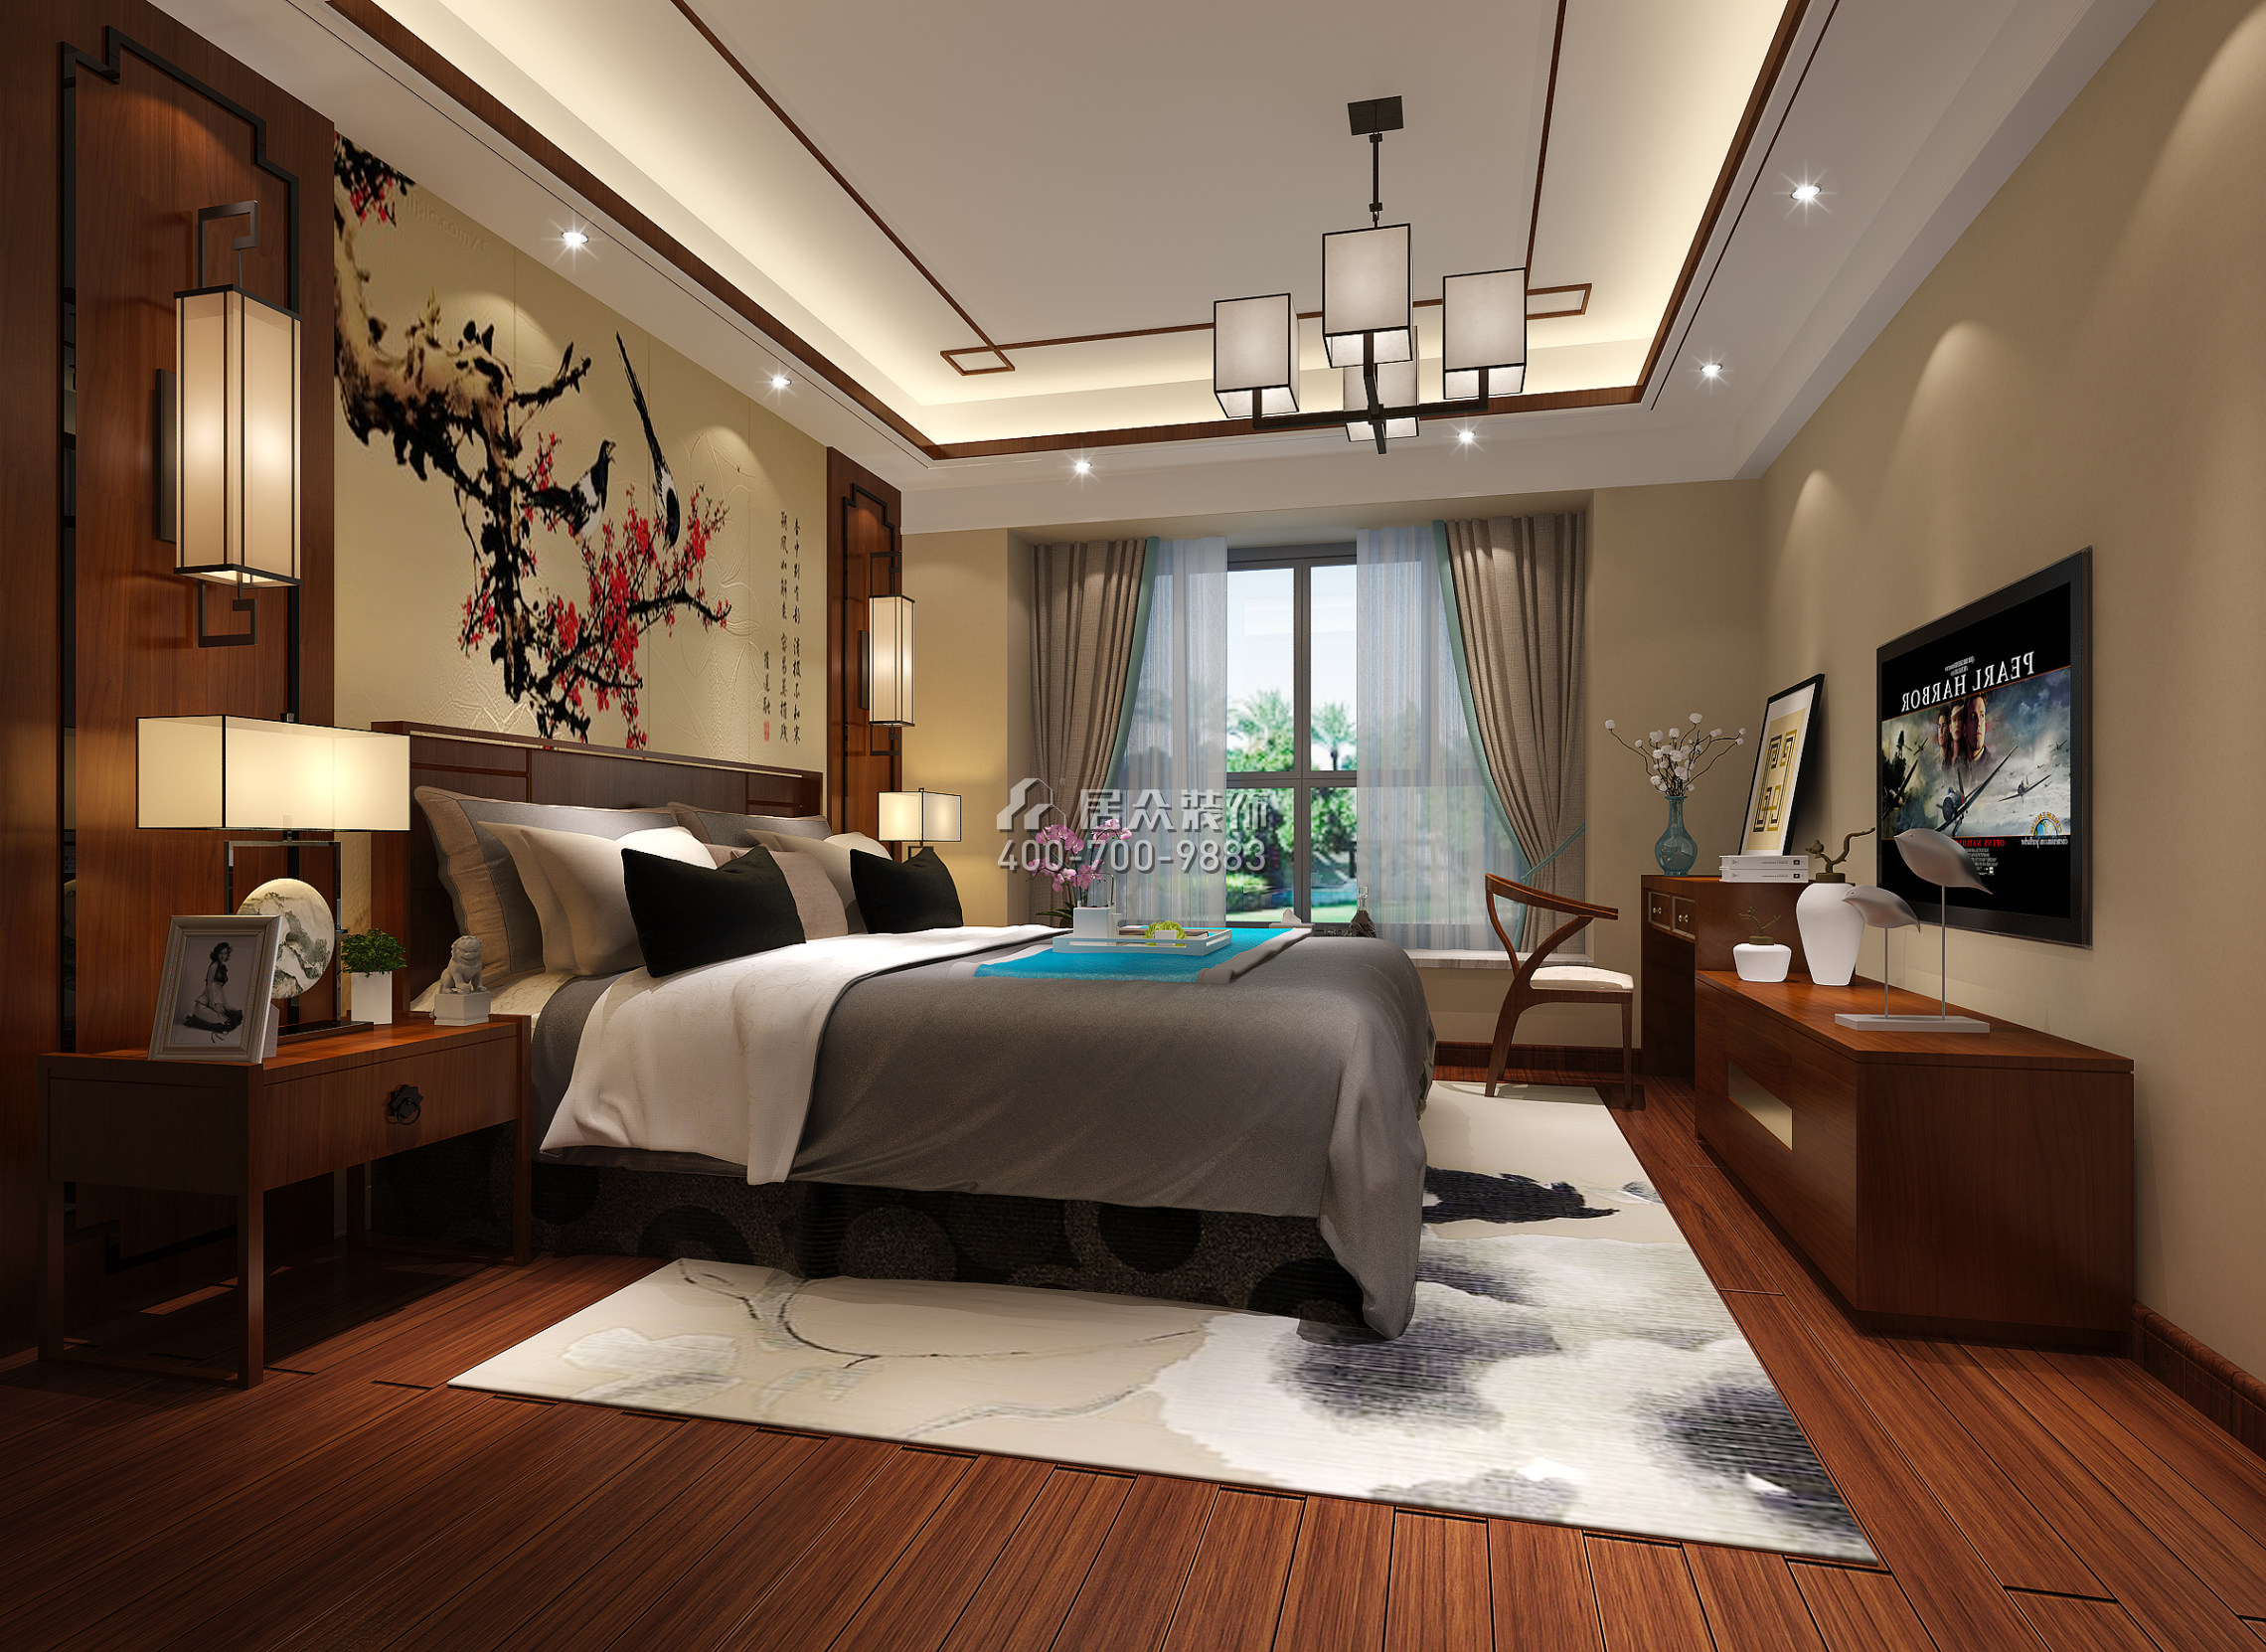 珊瑚天峰170平方米中式风格平层户型卧室装修效果图